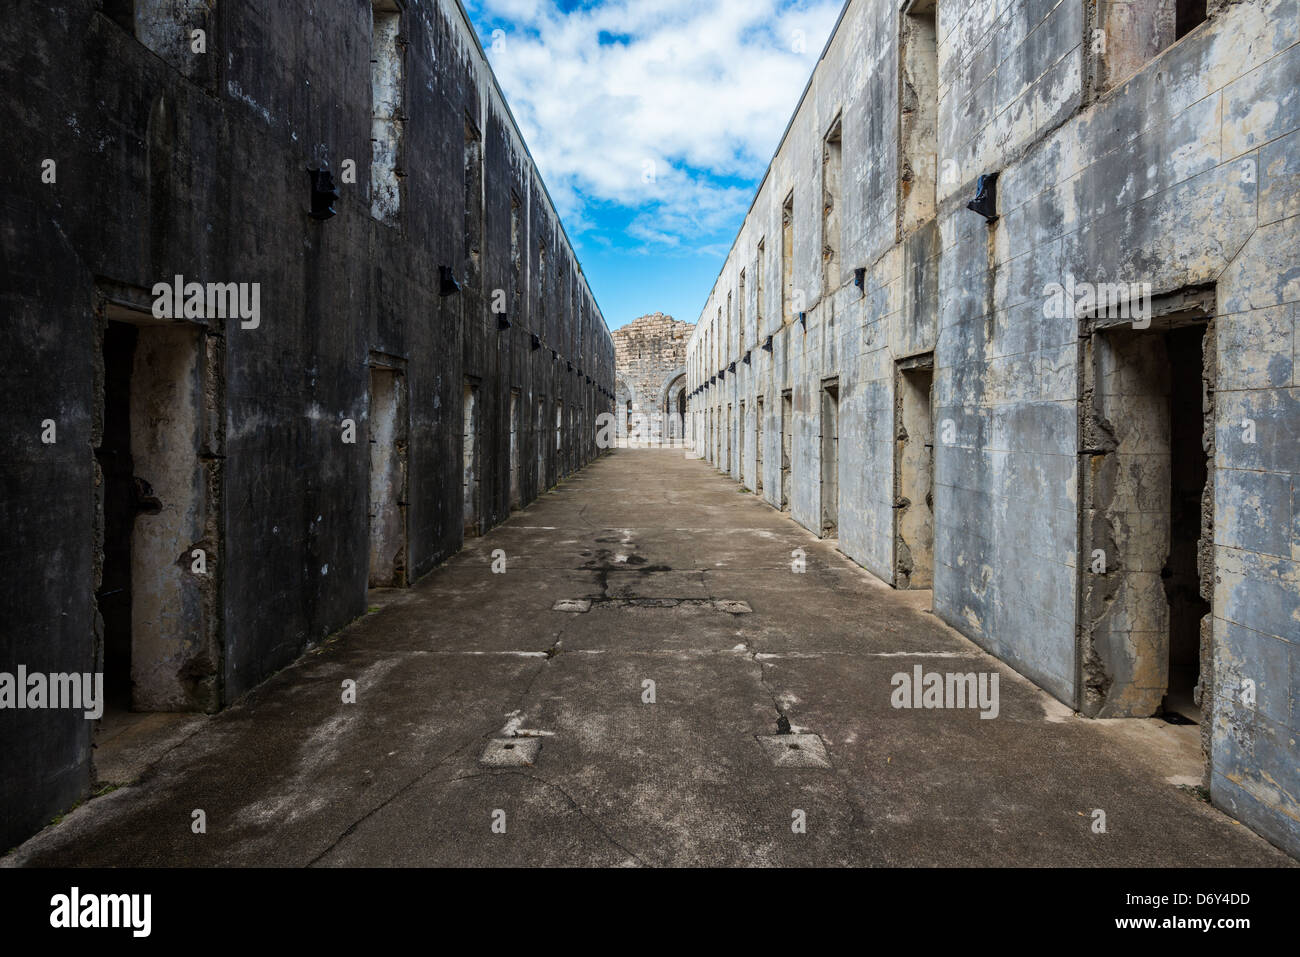 Ancienne prison ruines cellules côte centrale de la Nouvelle-Galles du Sud Australie Banque D'Images